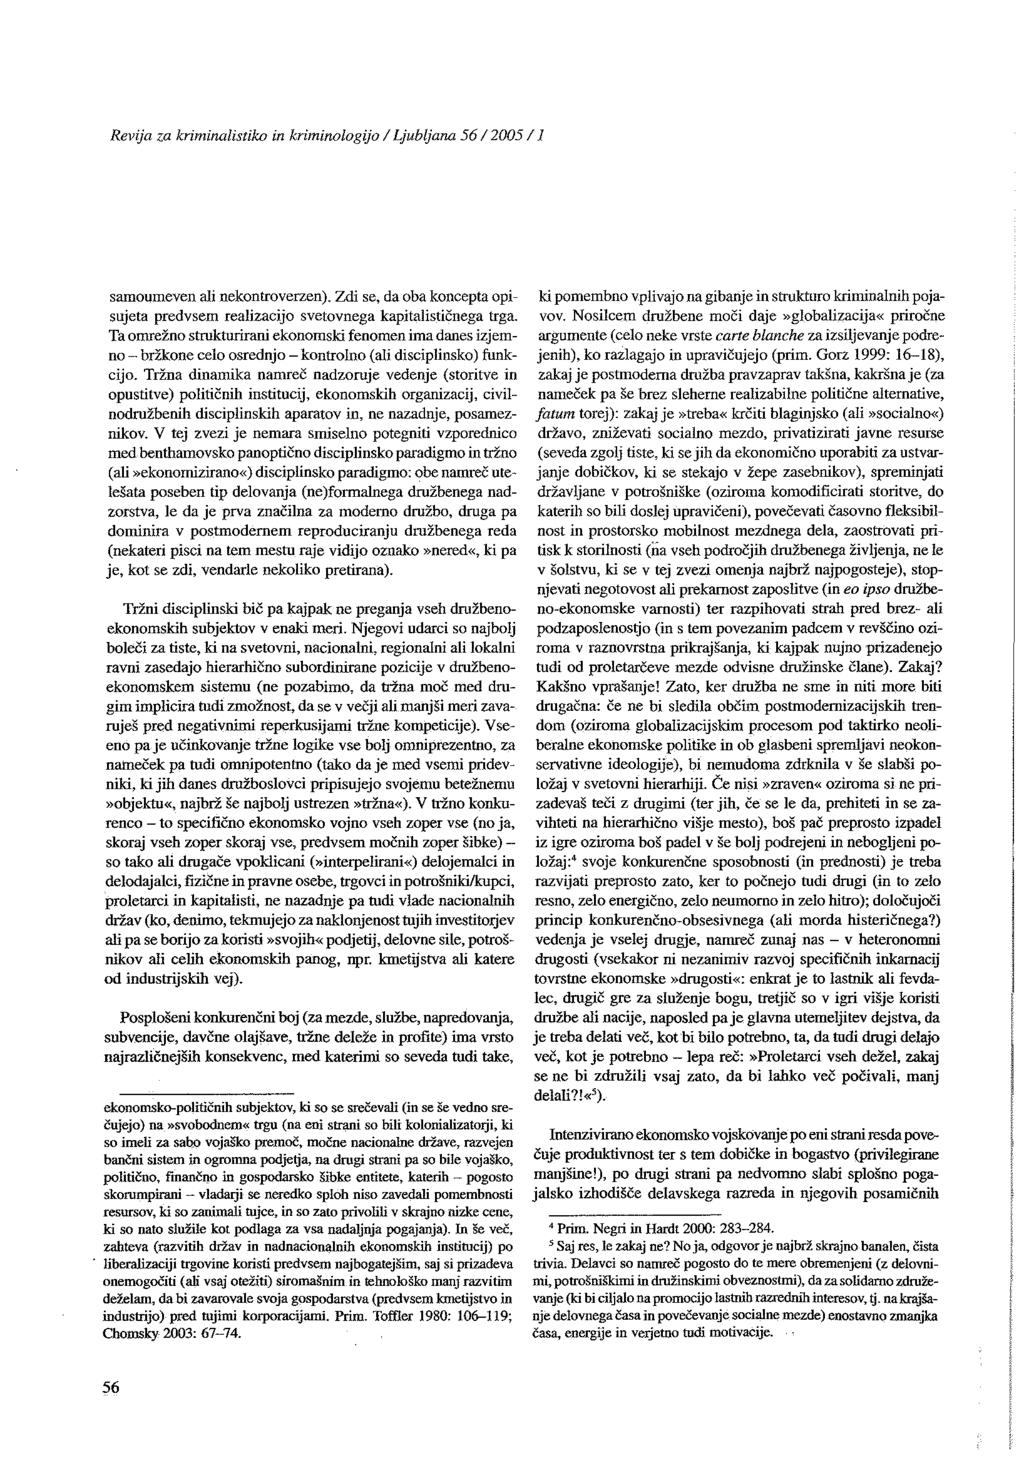 Revija za kriminalistiko in kriminologijo / Ljubljana 56/2005/J samoumeven ali nekontroverzen). Zdi se, da oba koncepta opisujeta predvsem realizacijo svetovnega kapitalističnega trga.